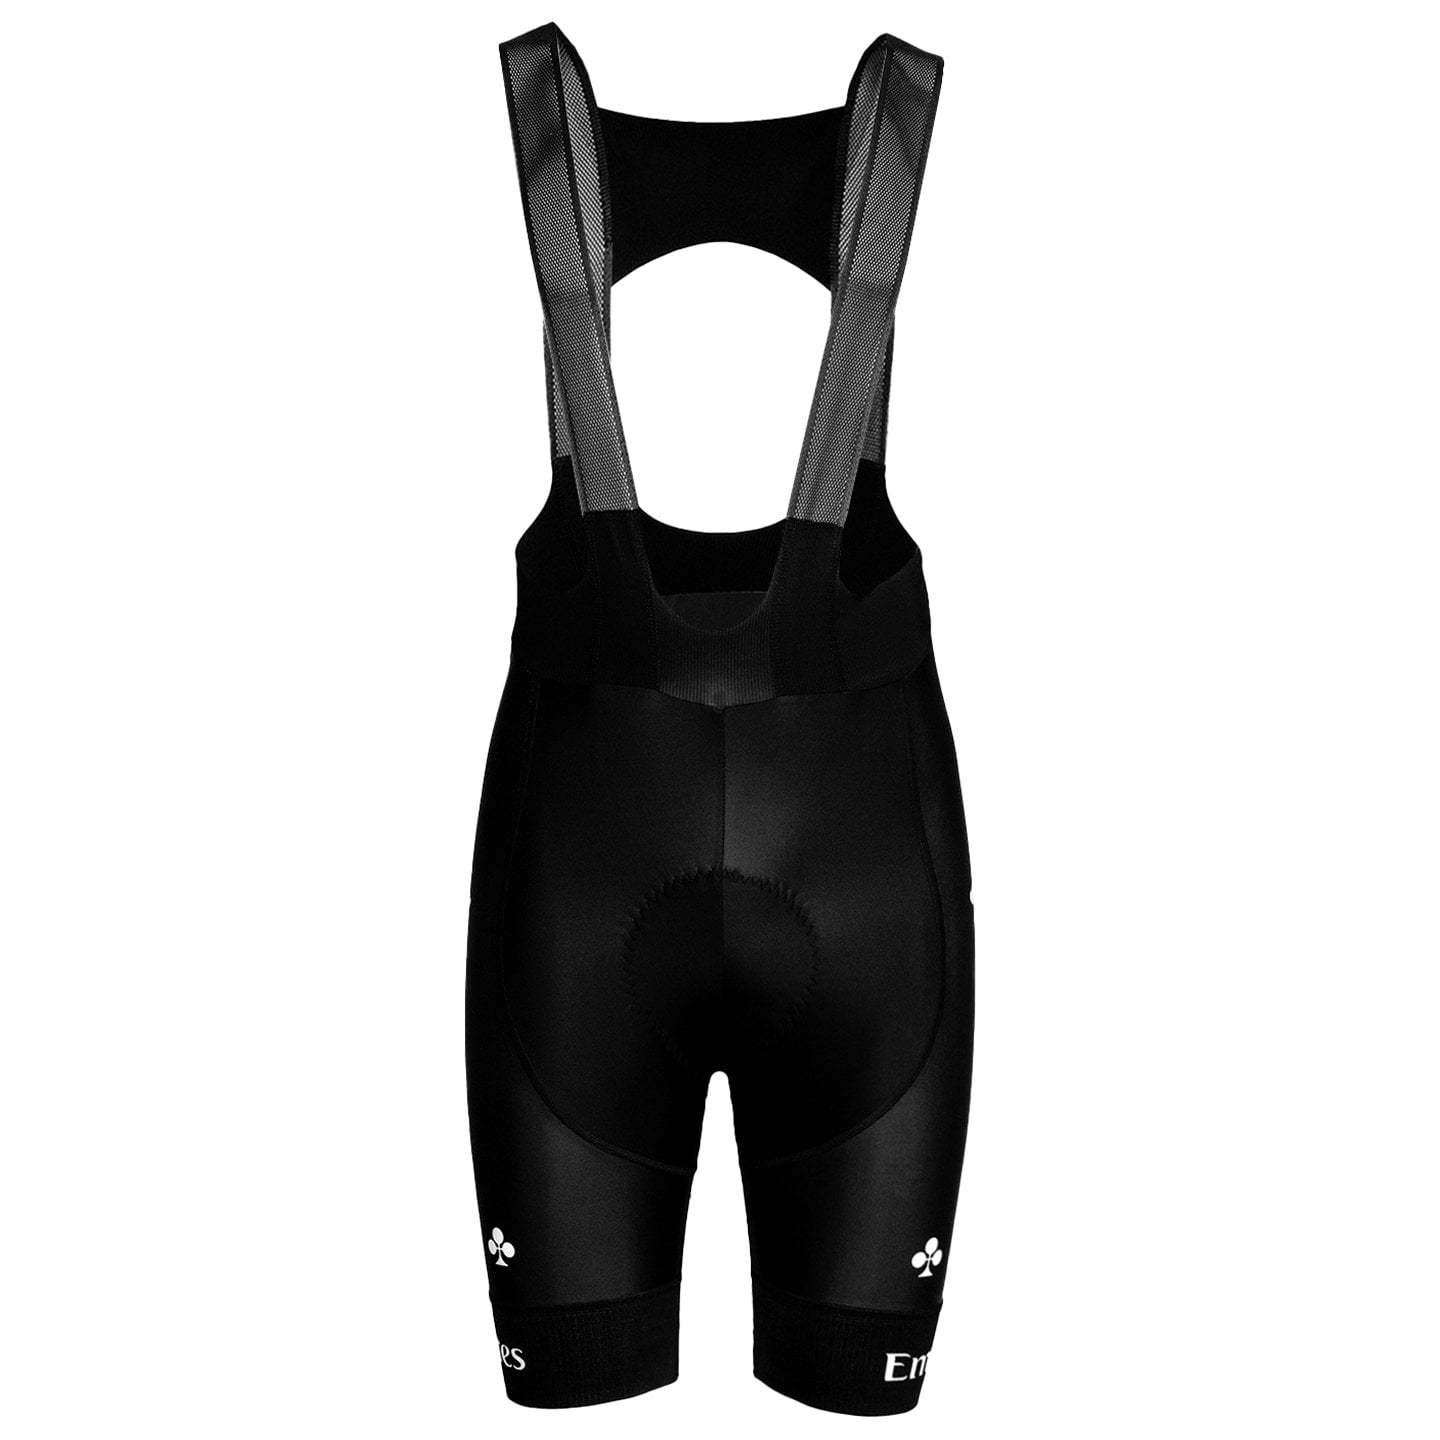 UAE TEAM EMIRATES 2024 Bib Shorts, for men, size M, Cycle shorts, Cycling clothing